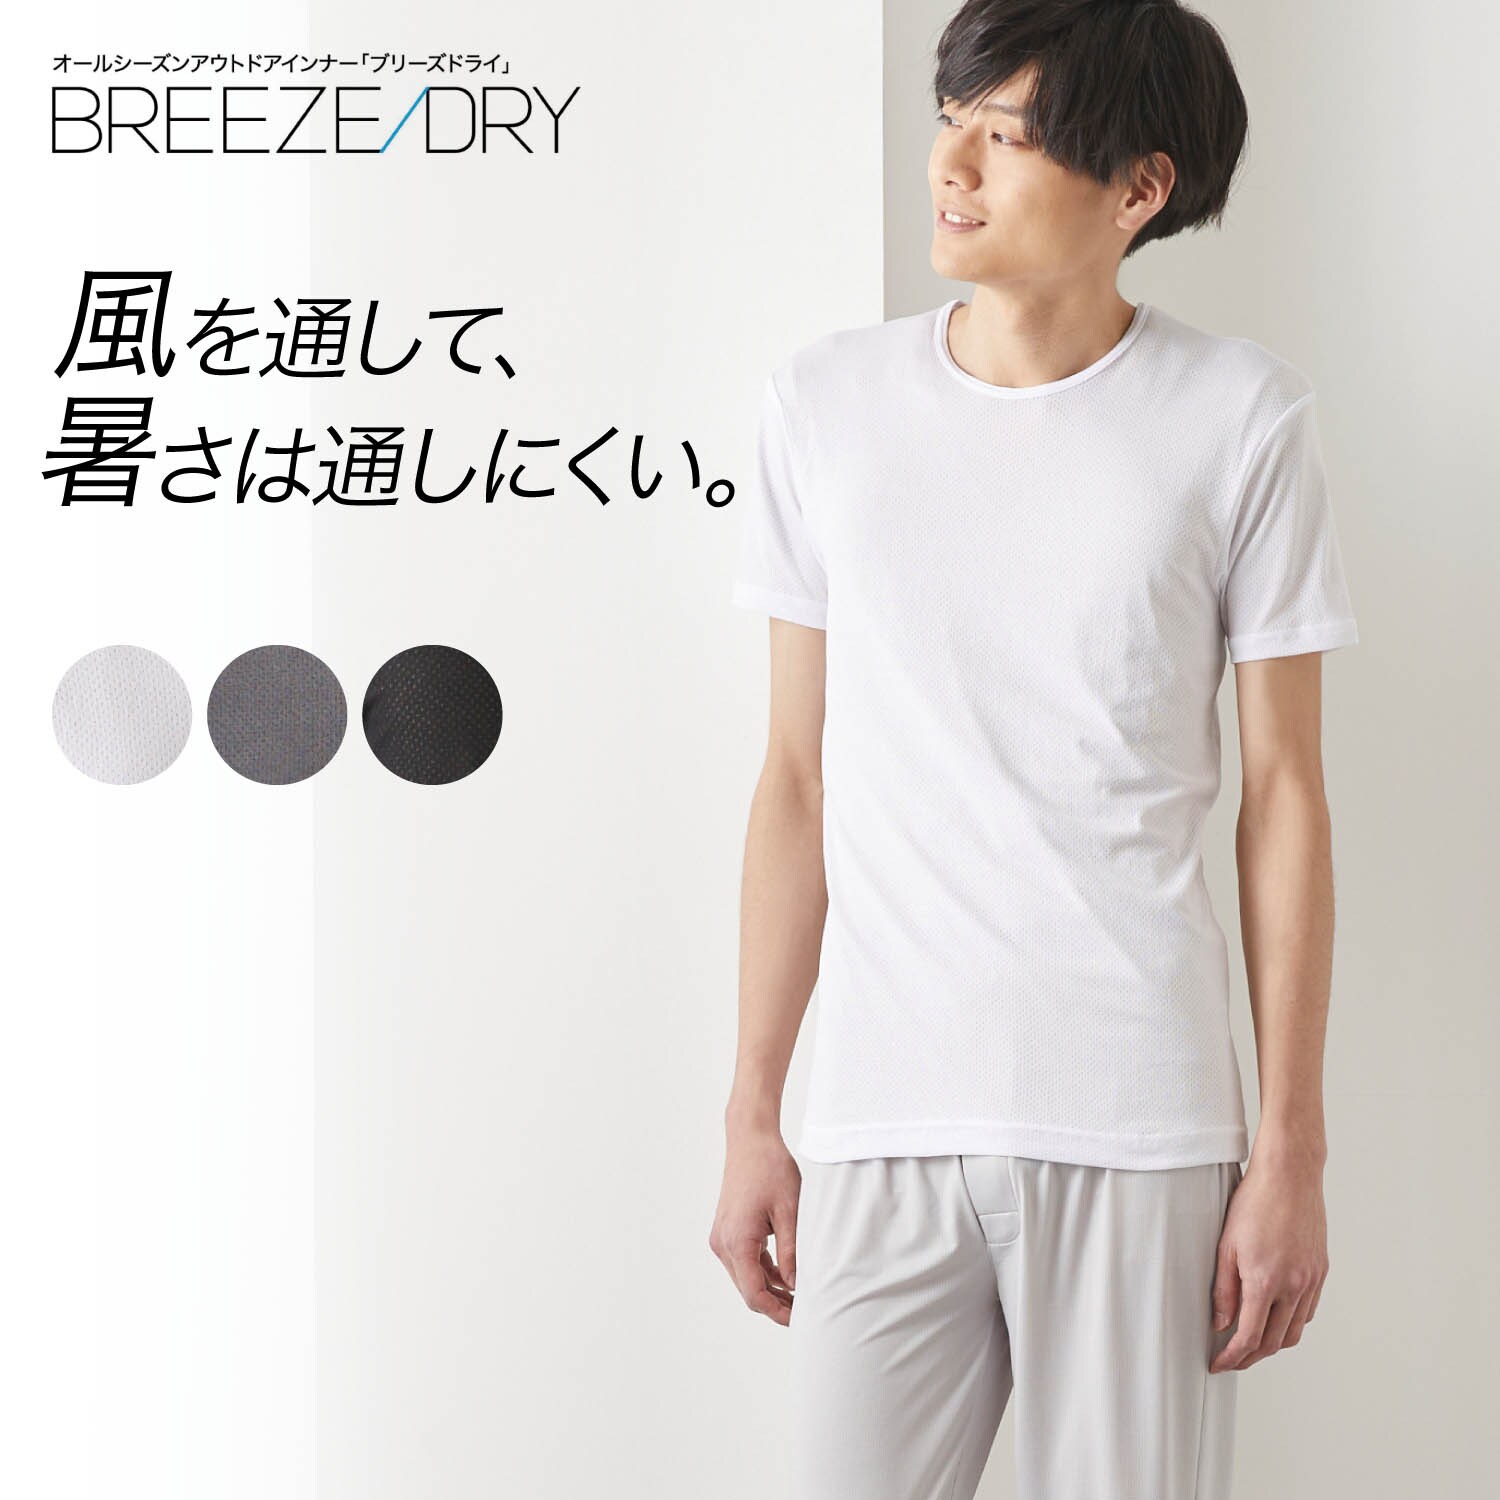 【ベルメゾン】【メンズ】BREEZE DRY 半袖丸首シャツ